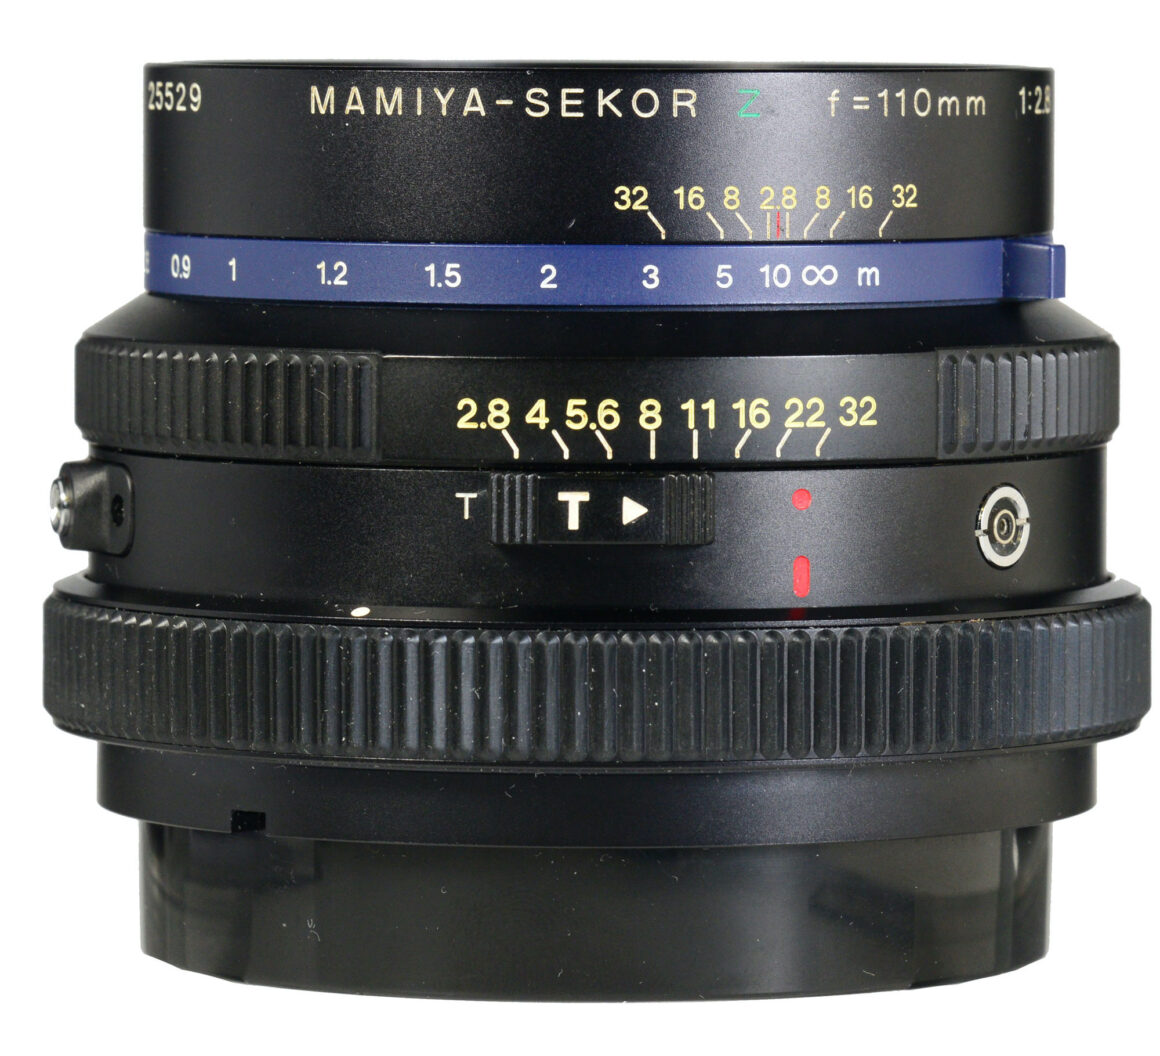 Mamiya Sekor Z 110mm f/2.8 for RZ67